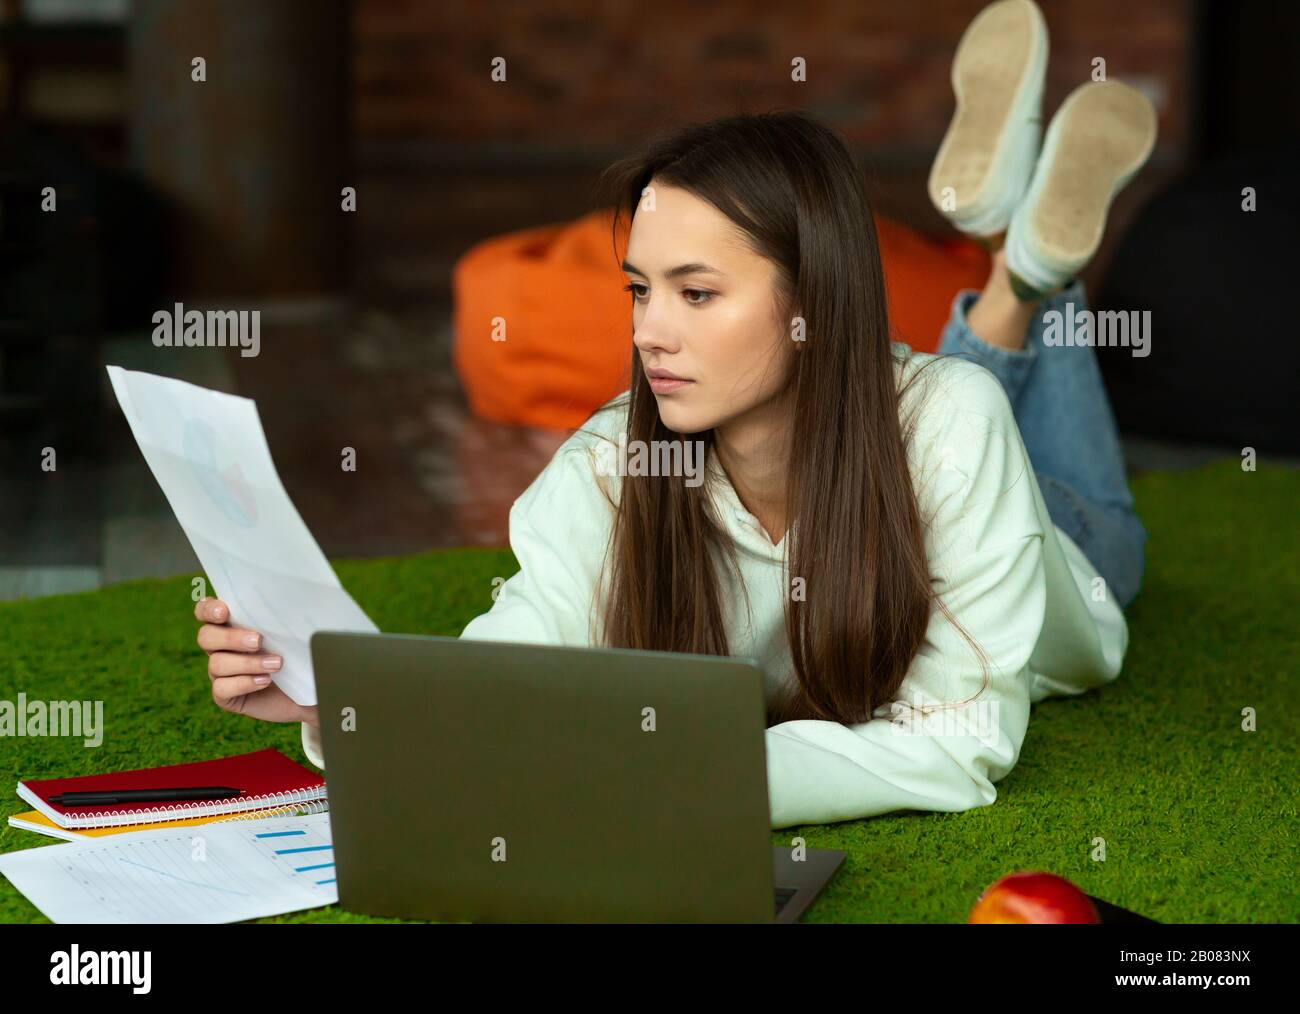 Das schöne Mädchen liegt auf dem Boden, sieht Papier an, arbeitet mit Computer und Notizblock Stockfoto